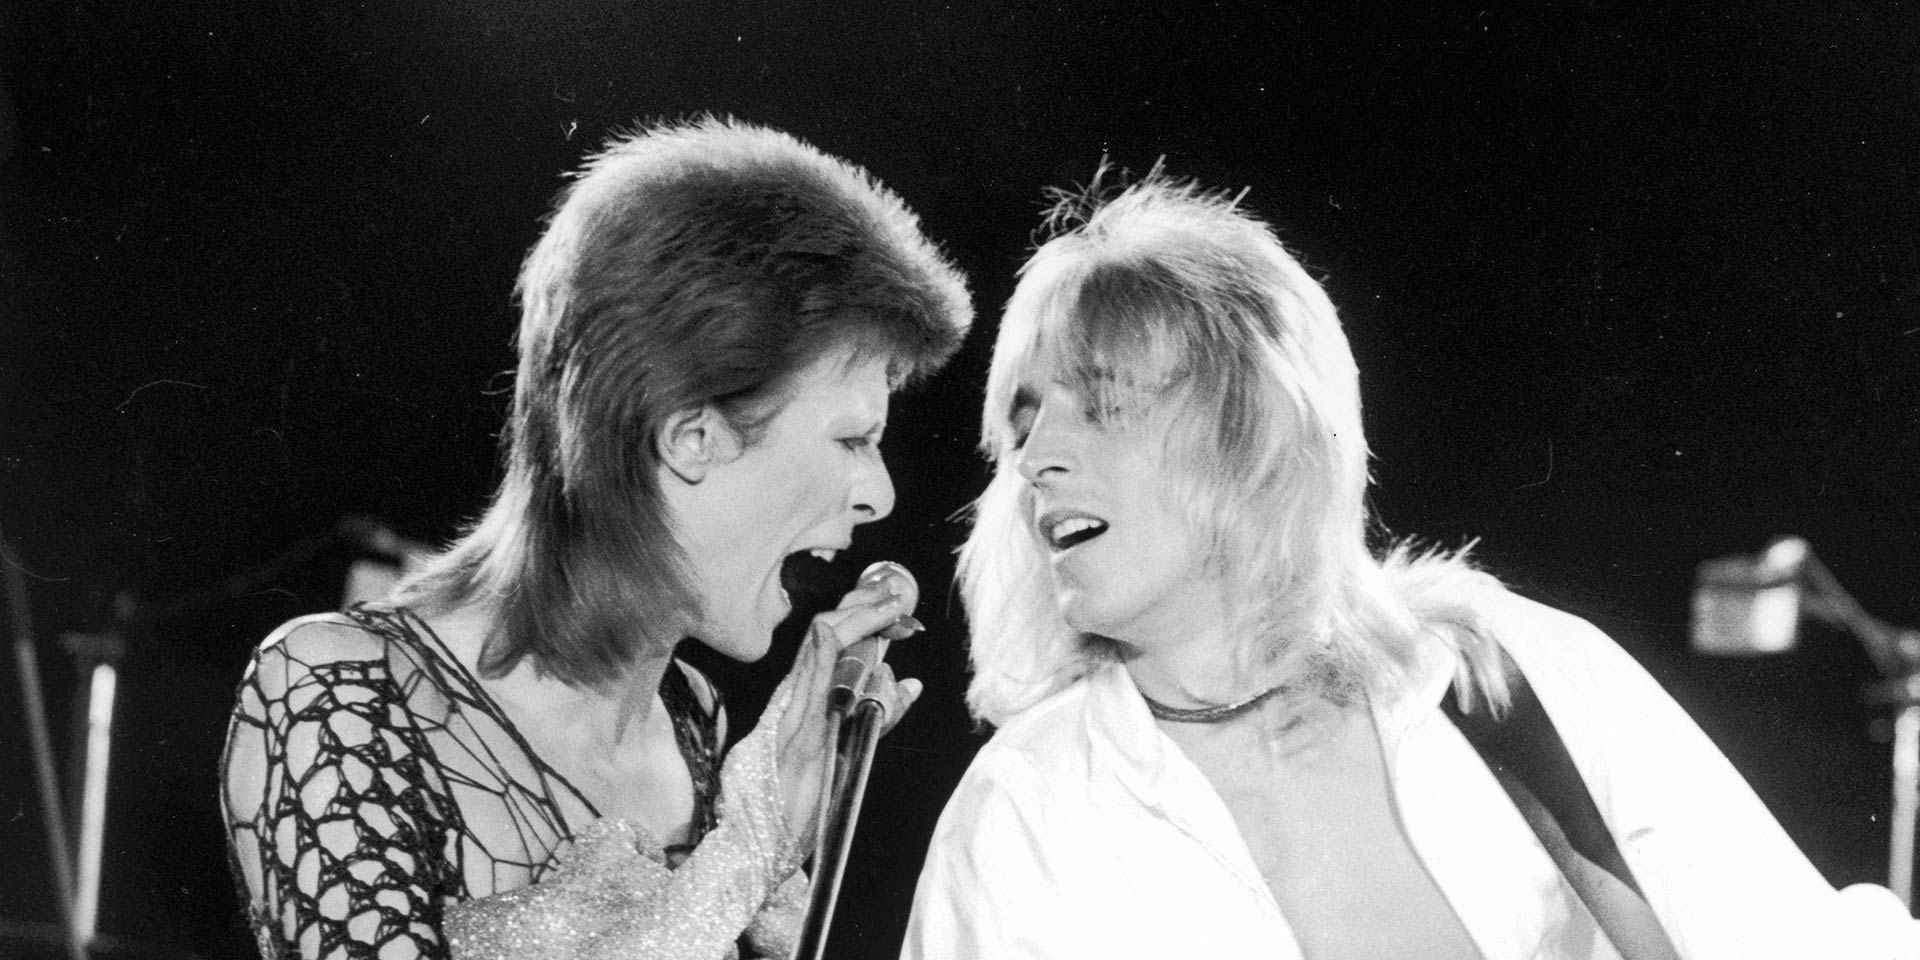 Mick Ronson, guitarrista de David Bowie tendrá un documental. Cusica plus.